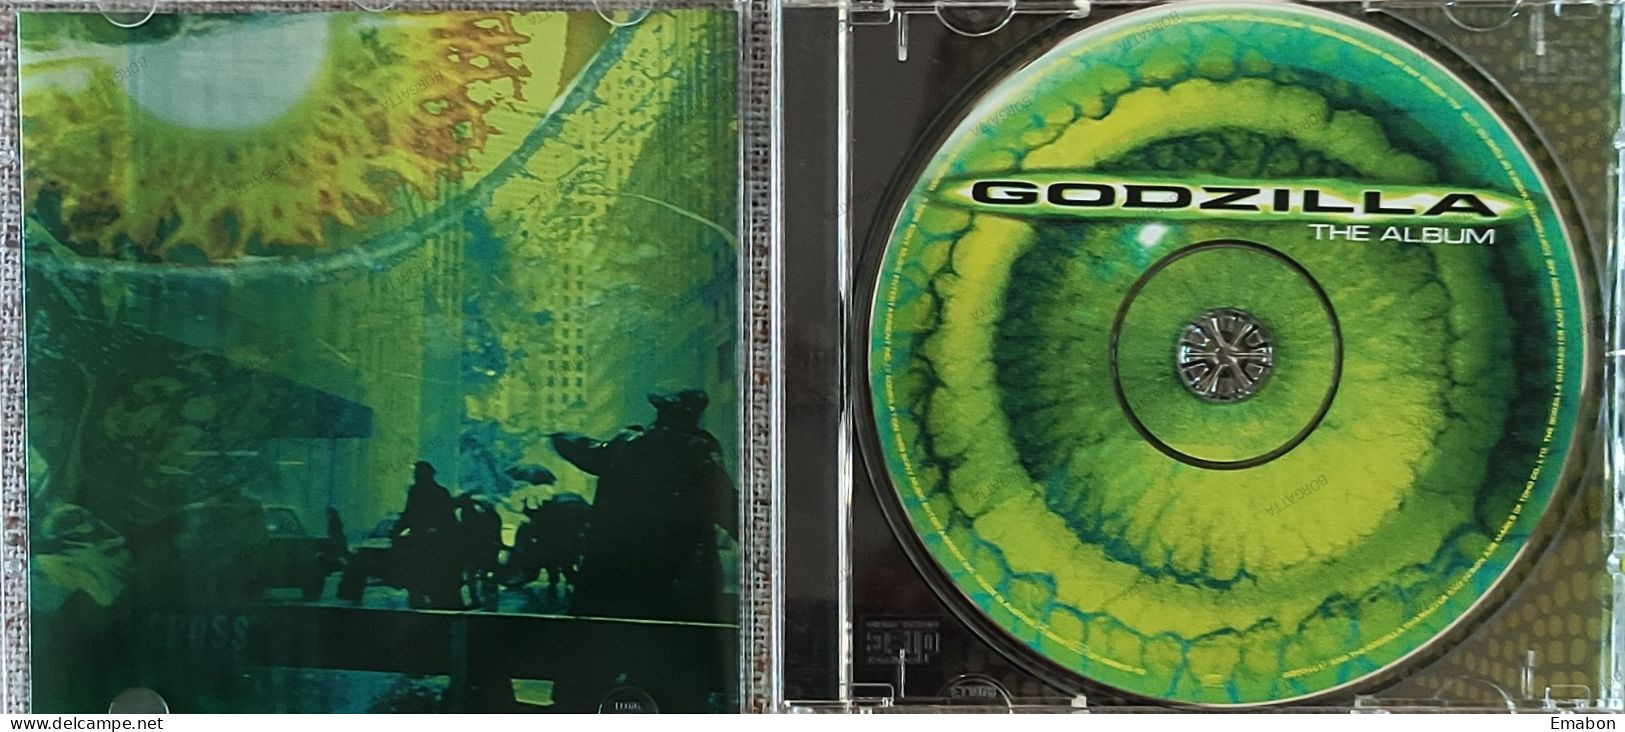 BORGATTA - FILM MUSIC  - Cd   THE ALBUM GODZILLA - EPIC/SONY 1998- USATO In Buono Stato - Filmmusik